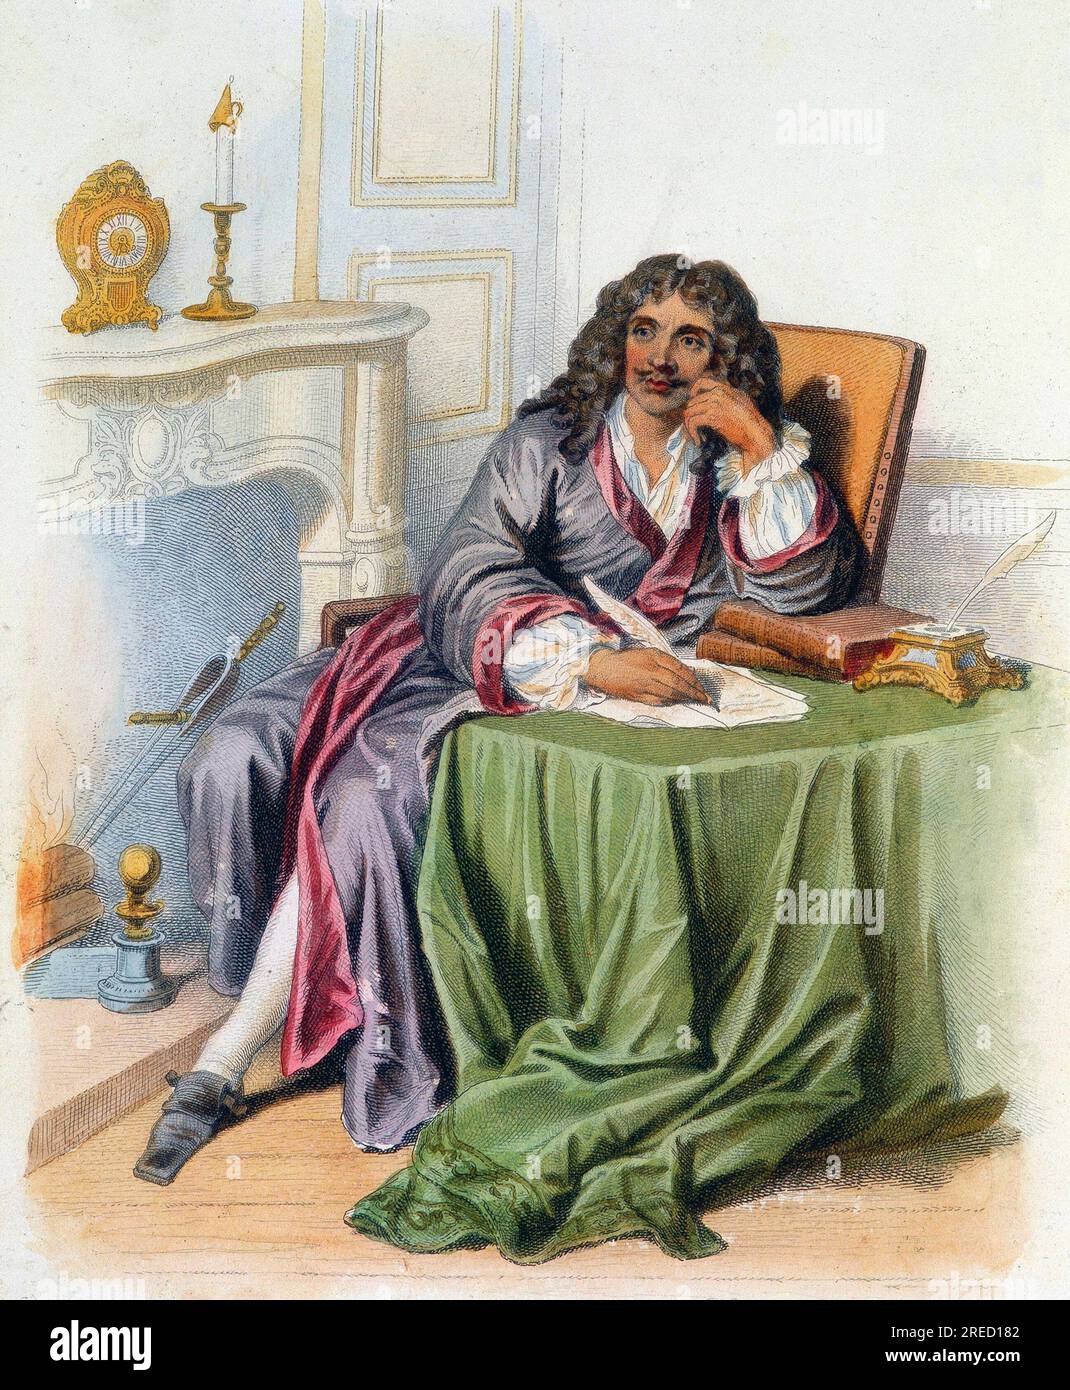 Portrait de Jean-Baptiste Poquelin dit Moliere, auteur dramatique et comedien francais (1622-1673) - in 'le Plutarque francais', Ed. Mennechet, 1844-1847 Banque D'Images